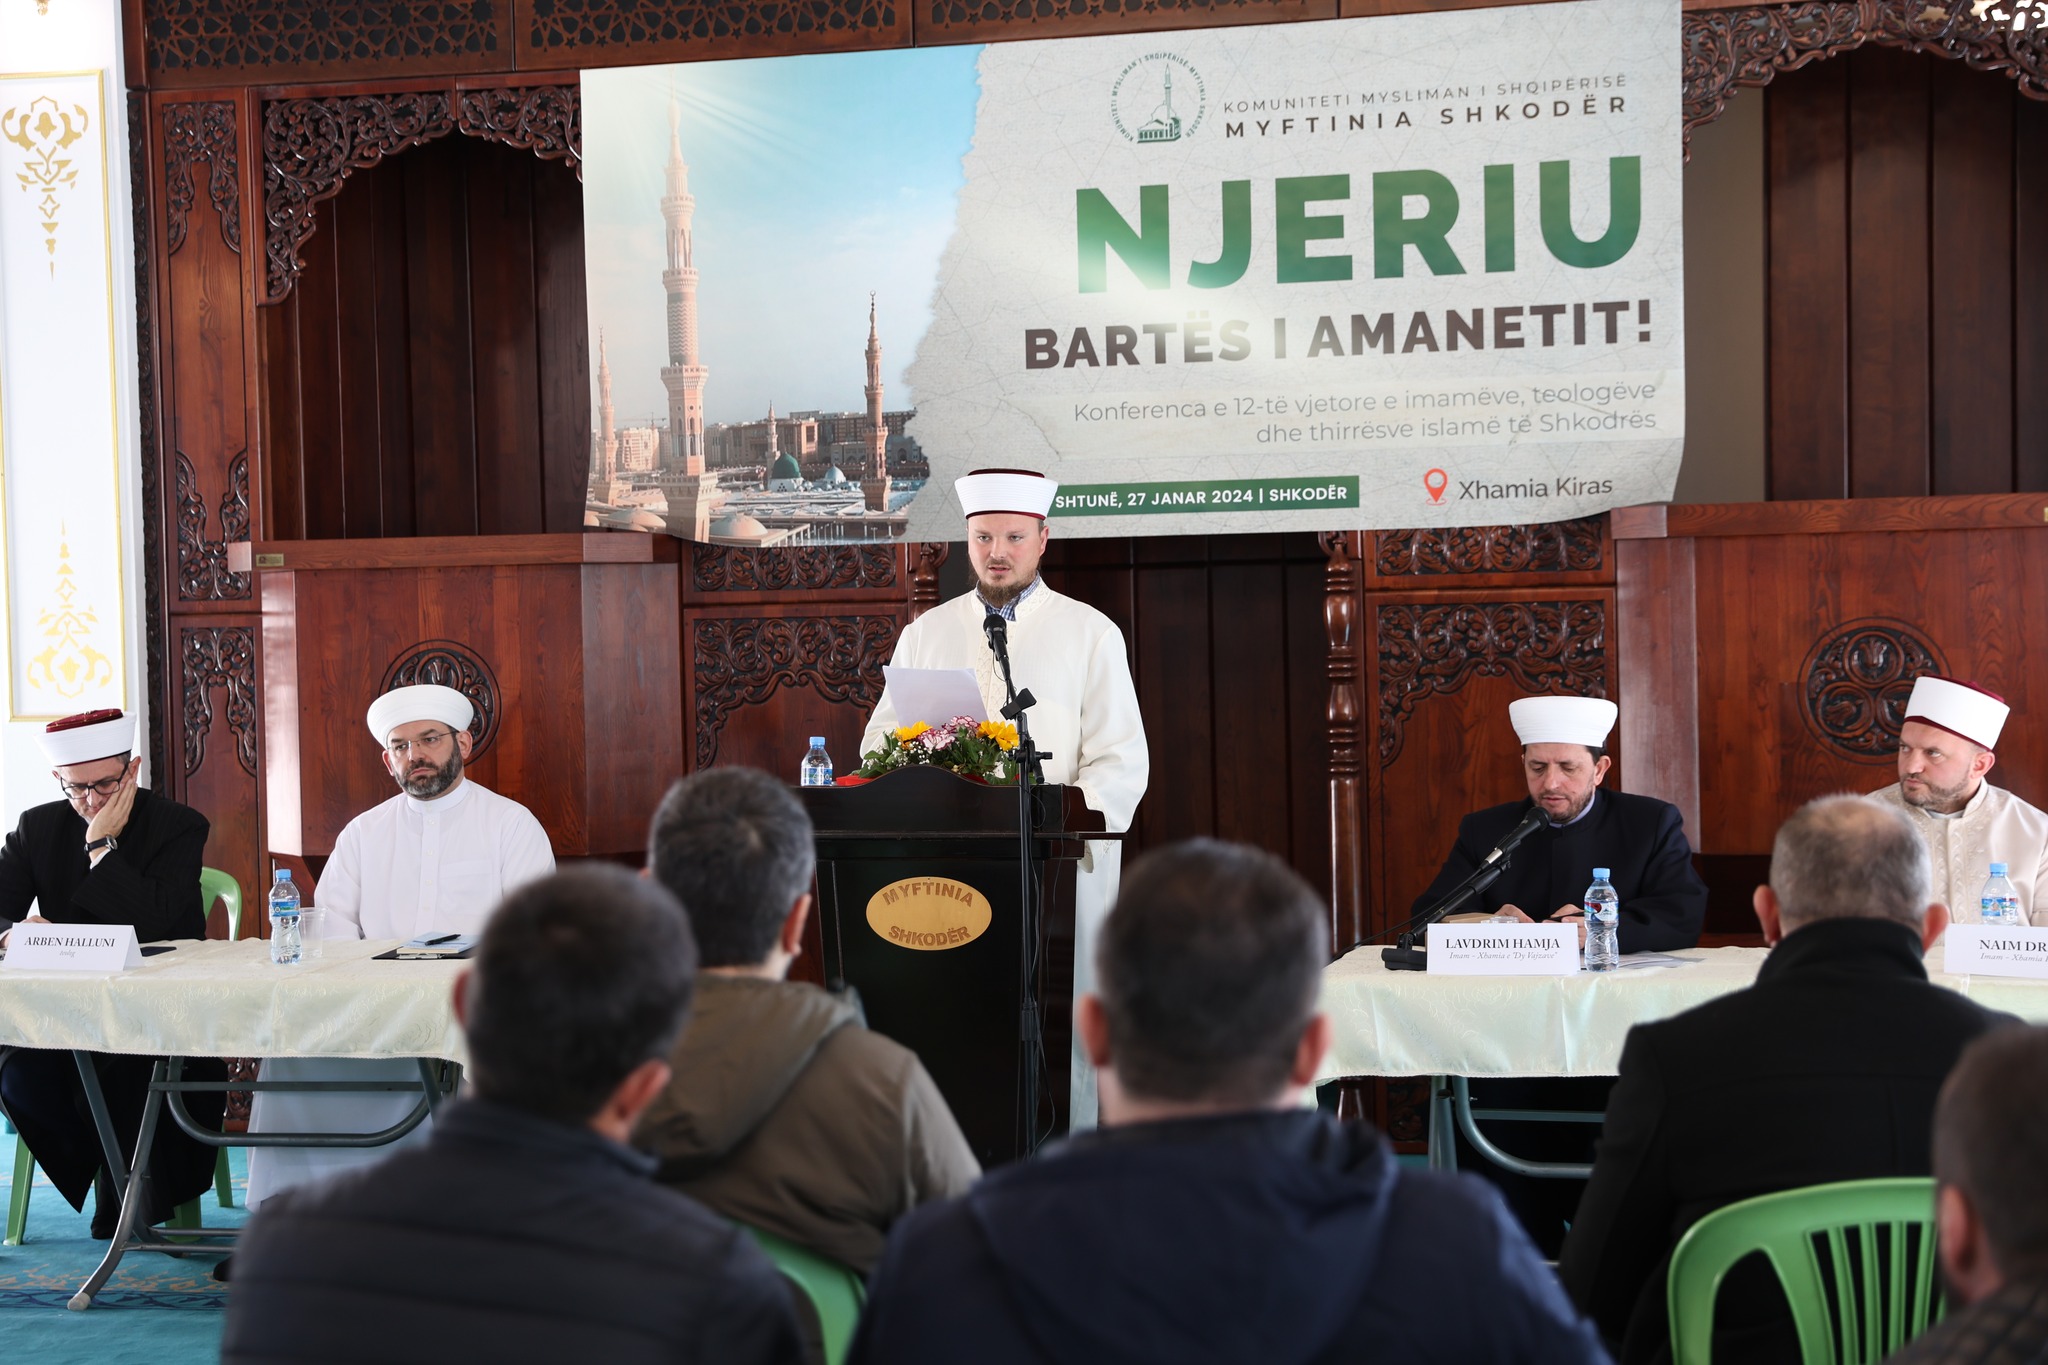 Zhvillohet konferenca e 12-të vjetore e imamëve: “Njeriu, bartës i amanetit!”